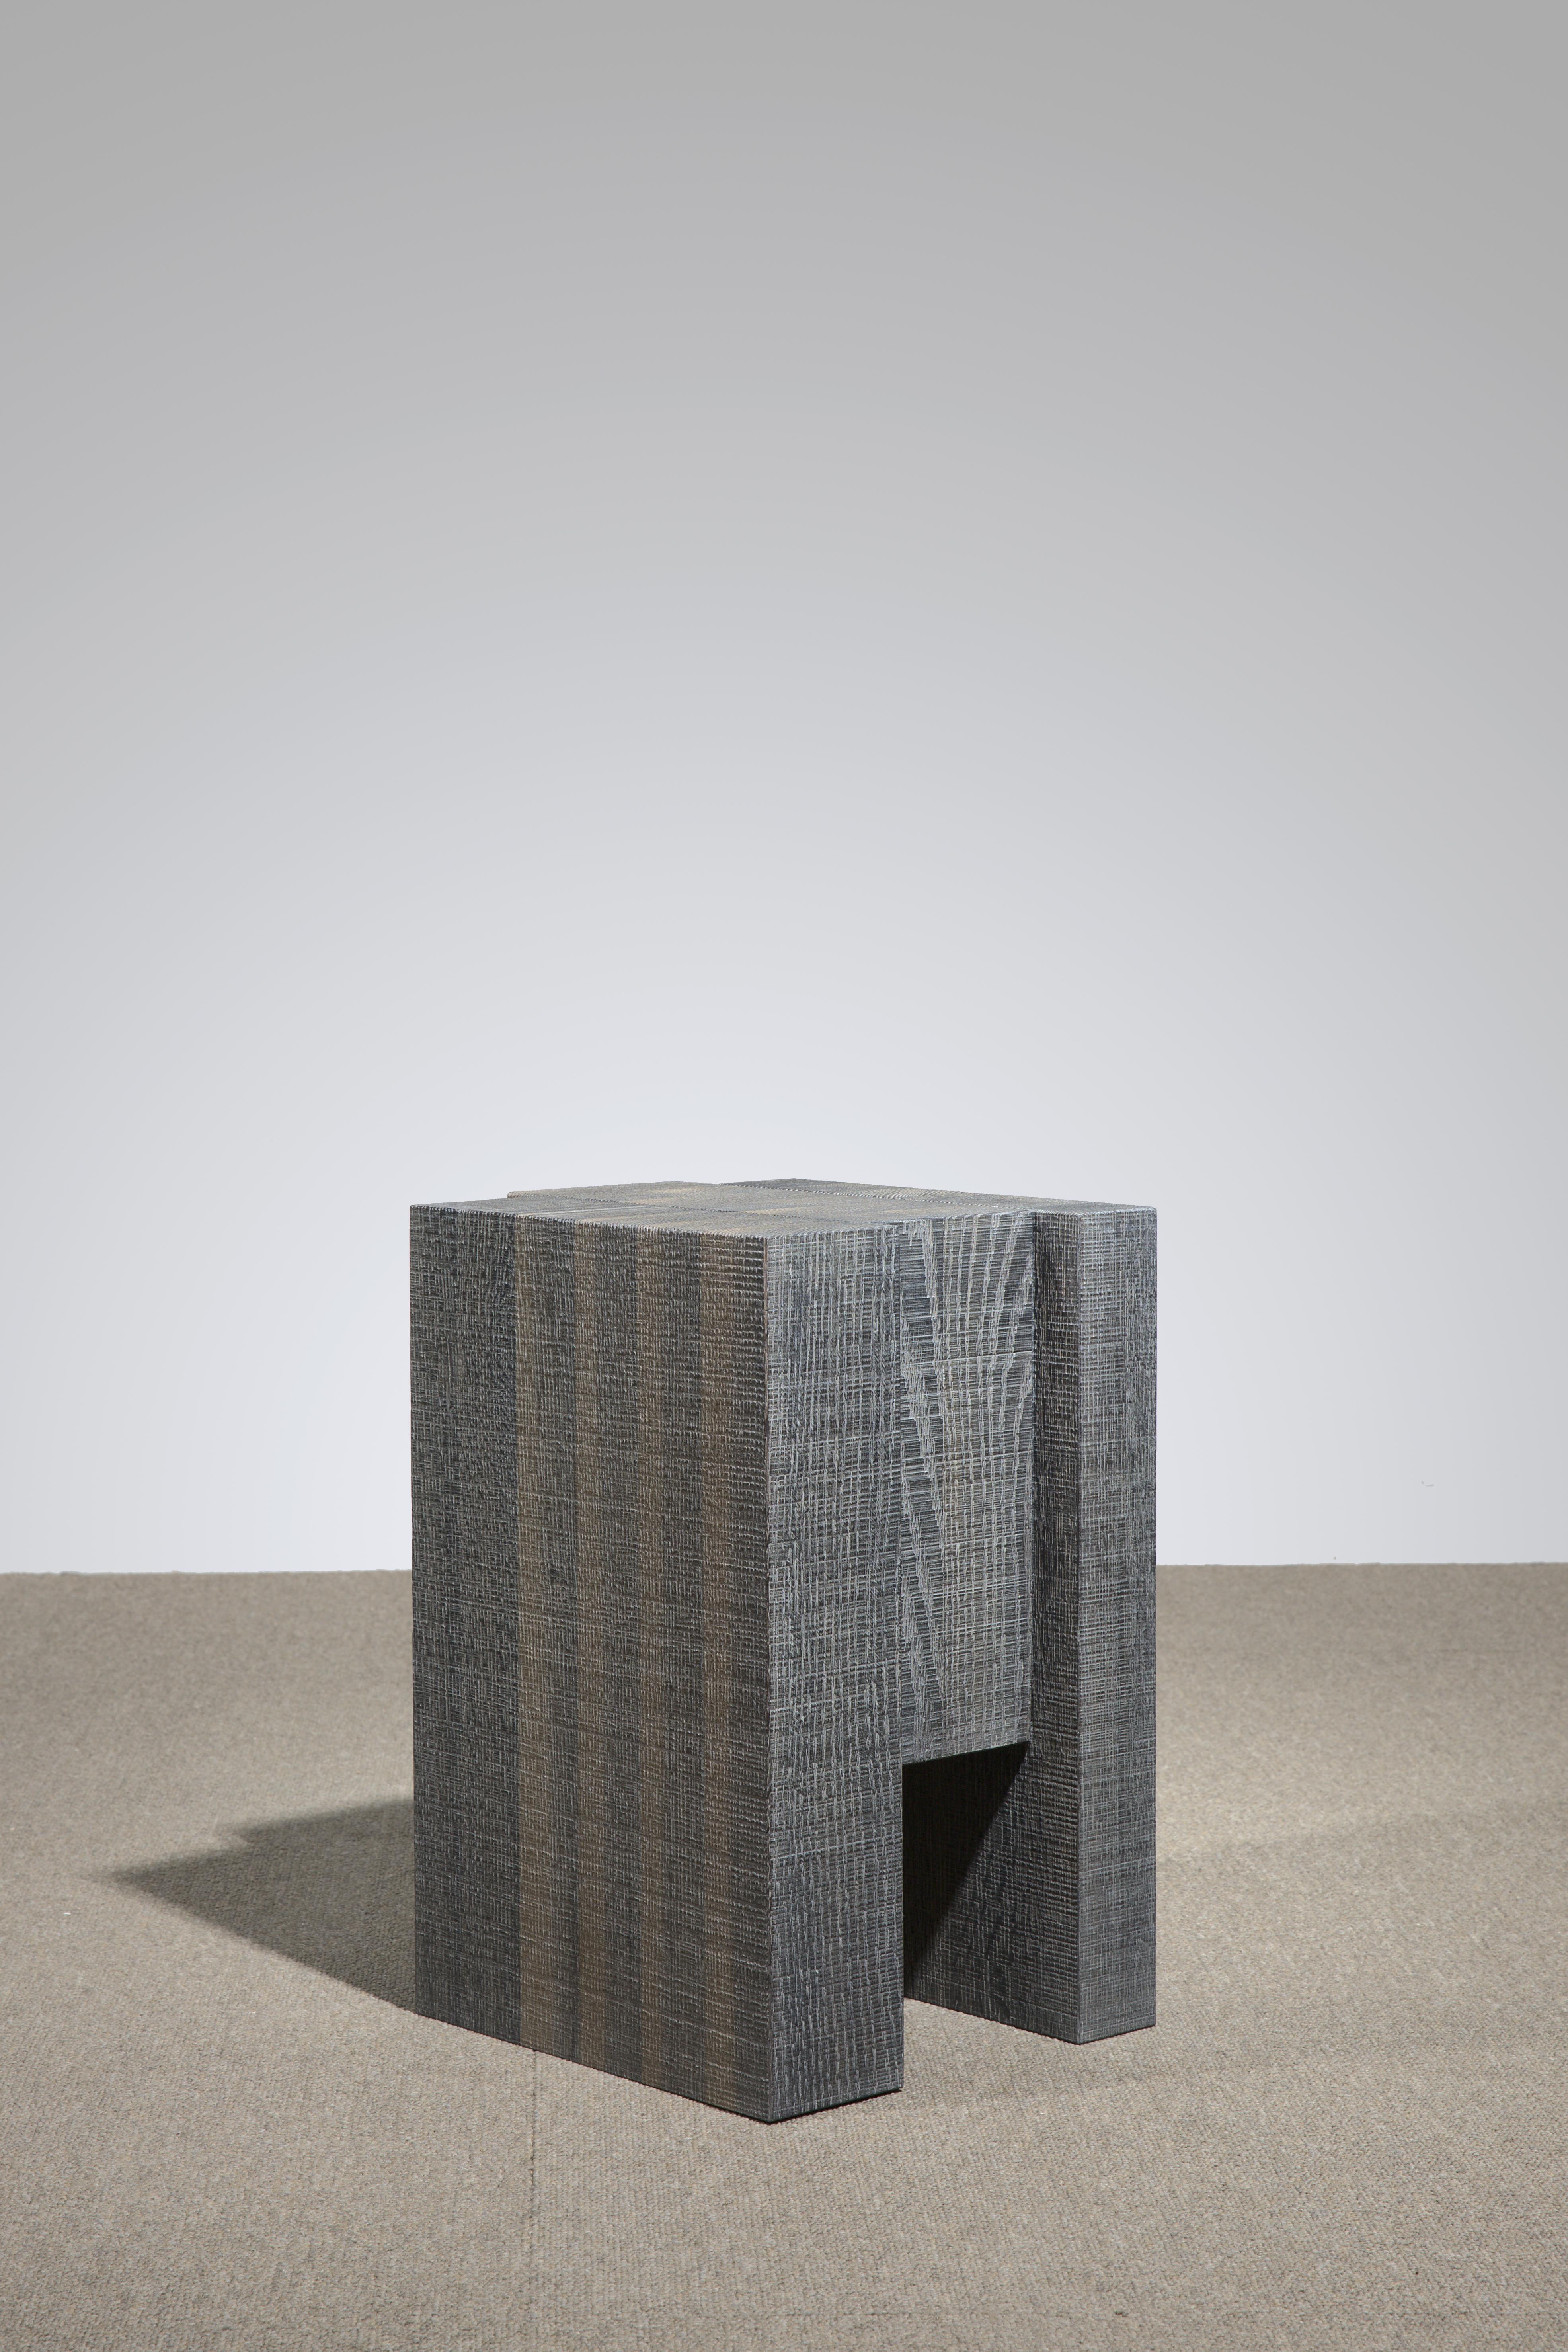 Tabouret en bois de chêne stratifié blanc III par Hyungshin Hwang.
Dimensions : D 36 x L 30 x H 45 cm.
MATERIAL : chêne rouge oxydé.

Layered Series est le thème principal et le concept de l'œuvre de Can, qui poursuit son expérience basée sur la